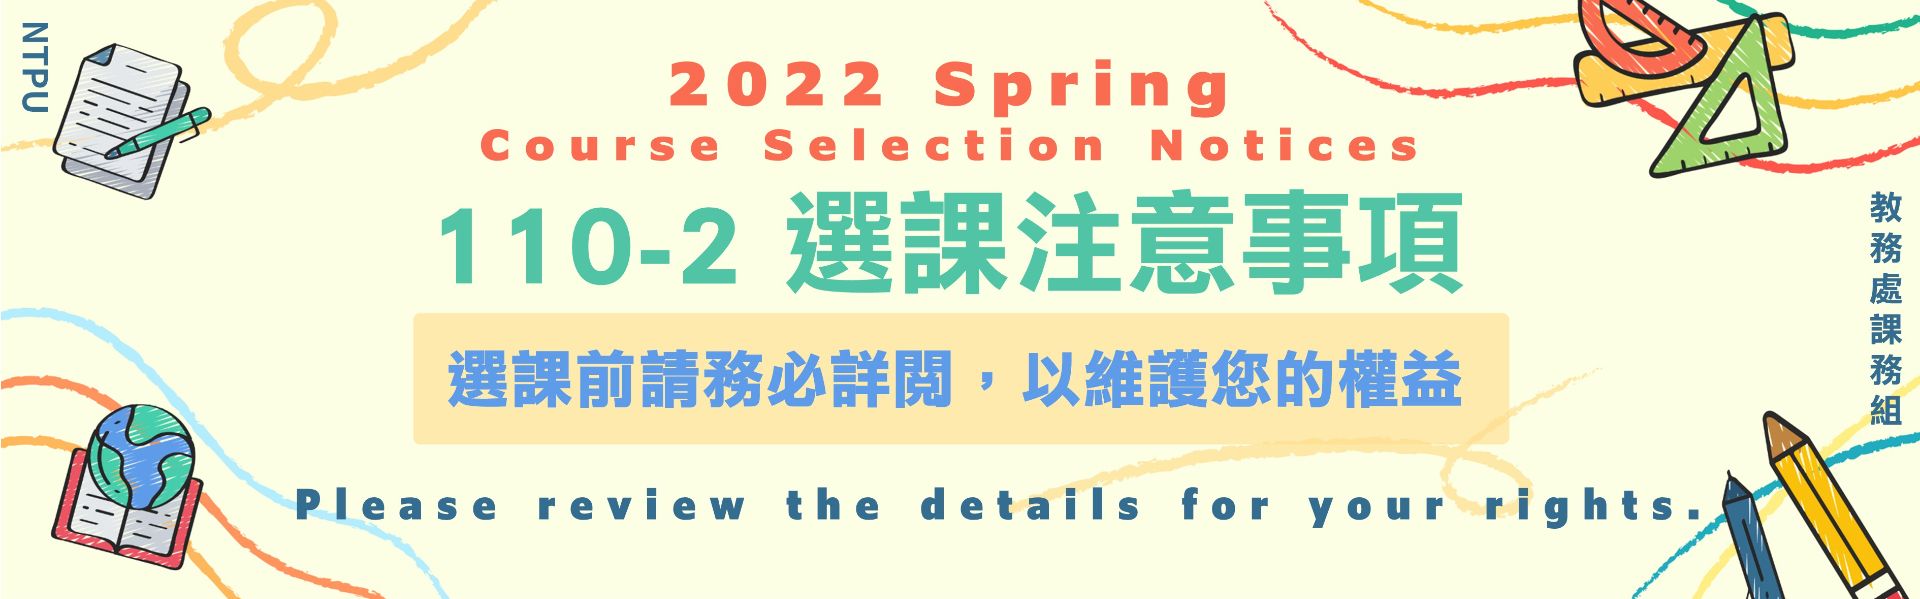 2022 Spring course selection